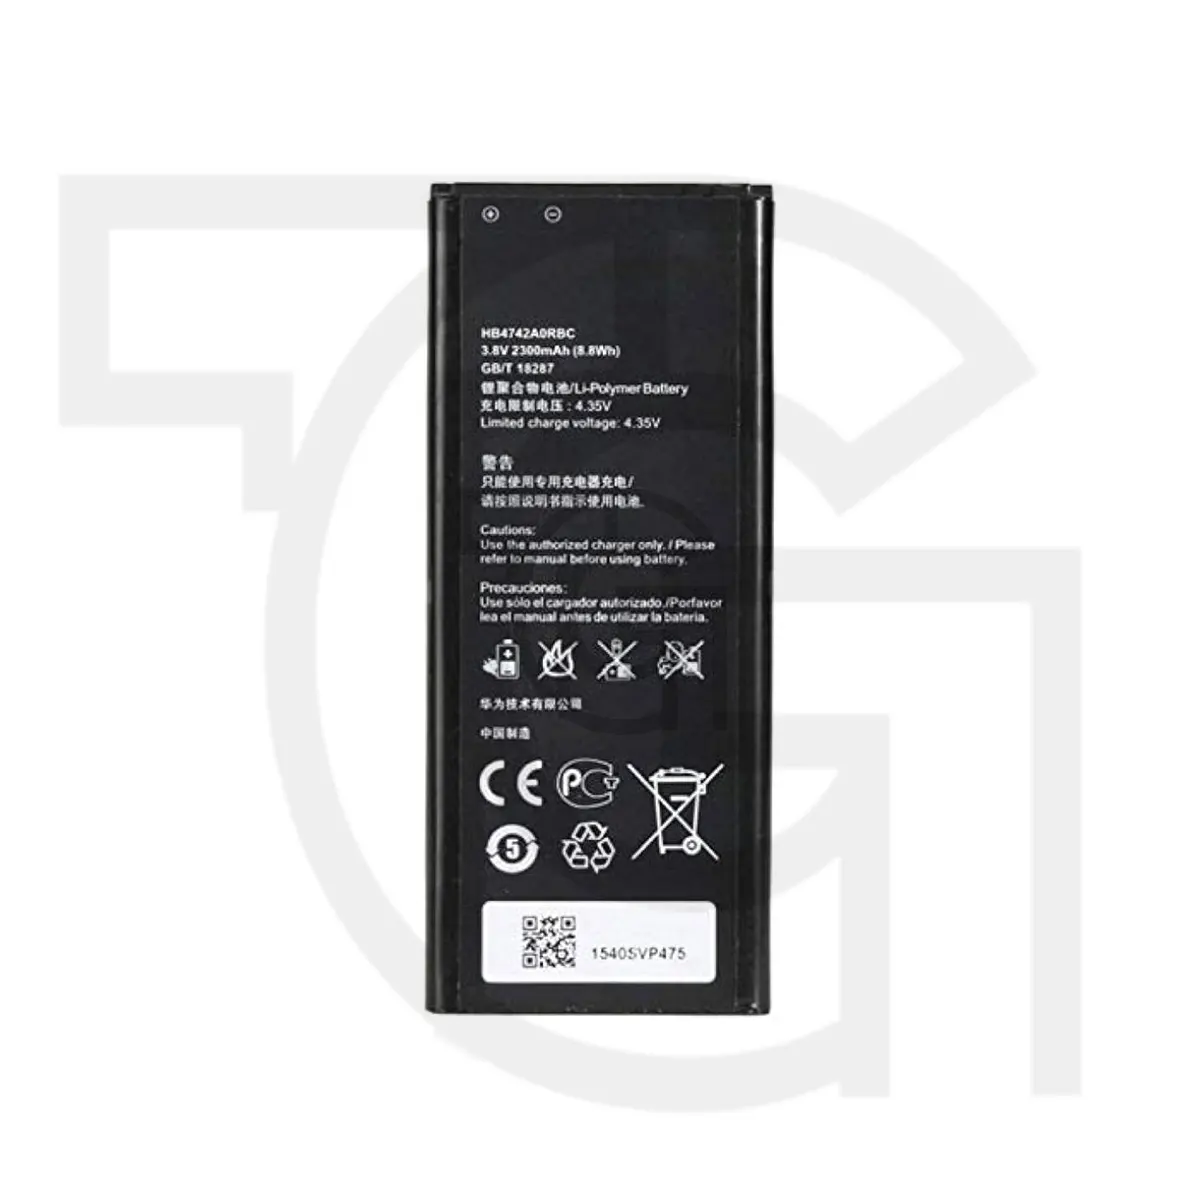 باتری هواوی (Huawei (HB4742A0RBC